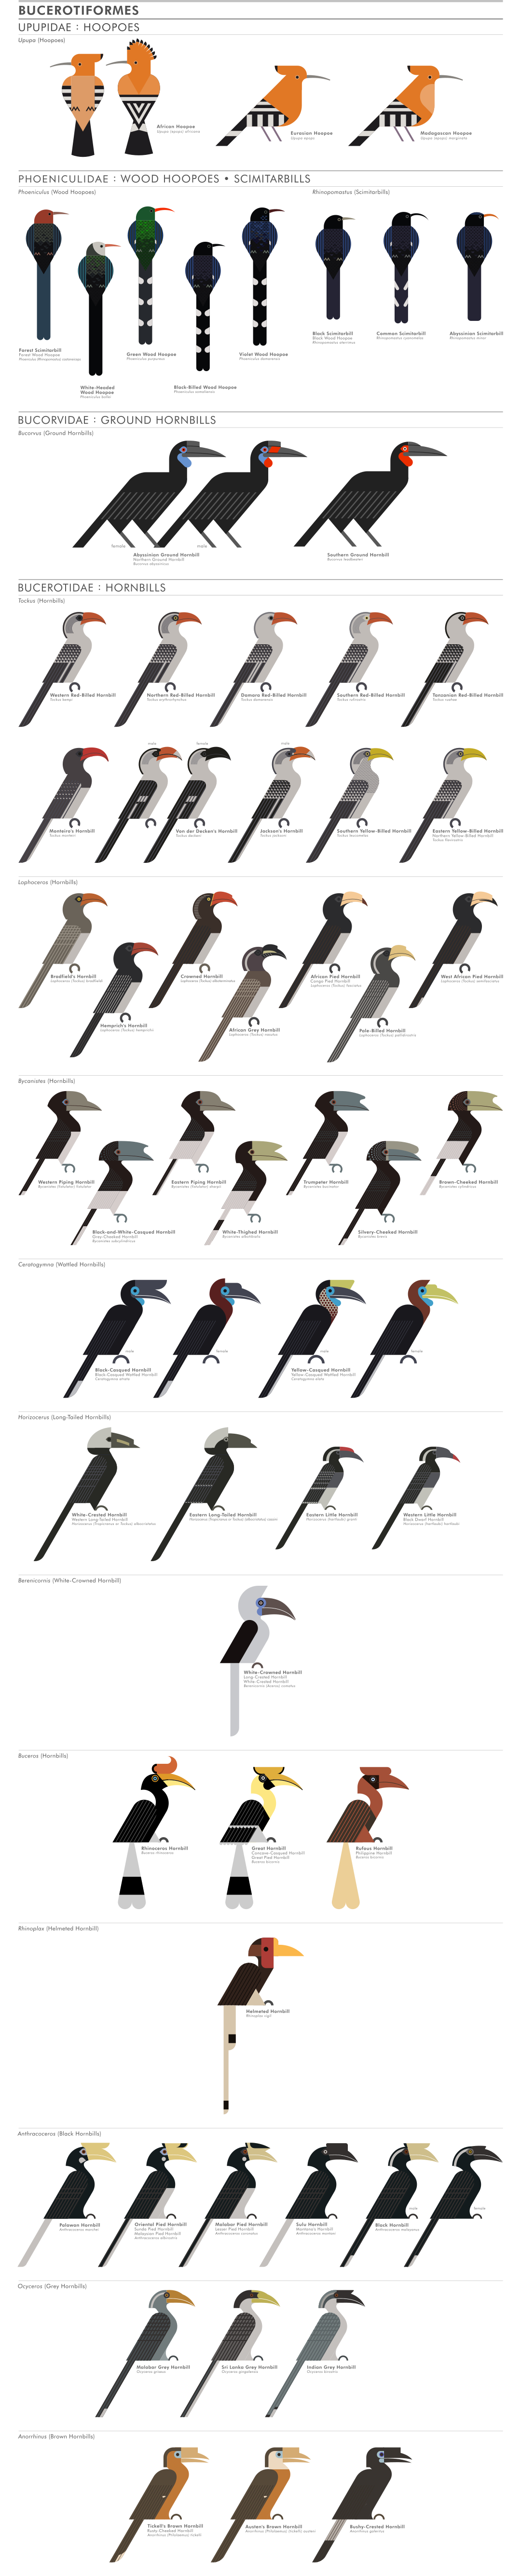 scott partridge - ave - avian vector encyclopedia - woodhoopoes scimitarbills hornbills bucerotiformes